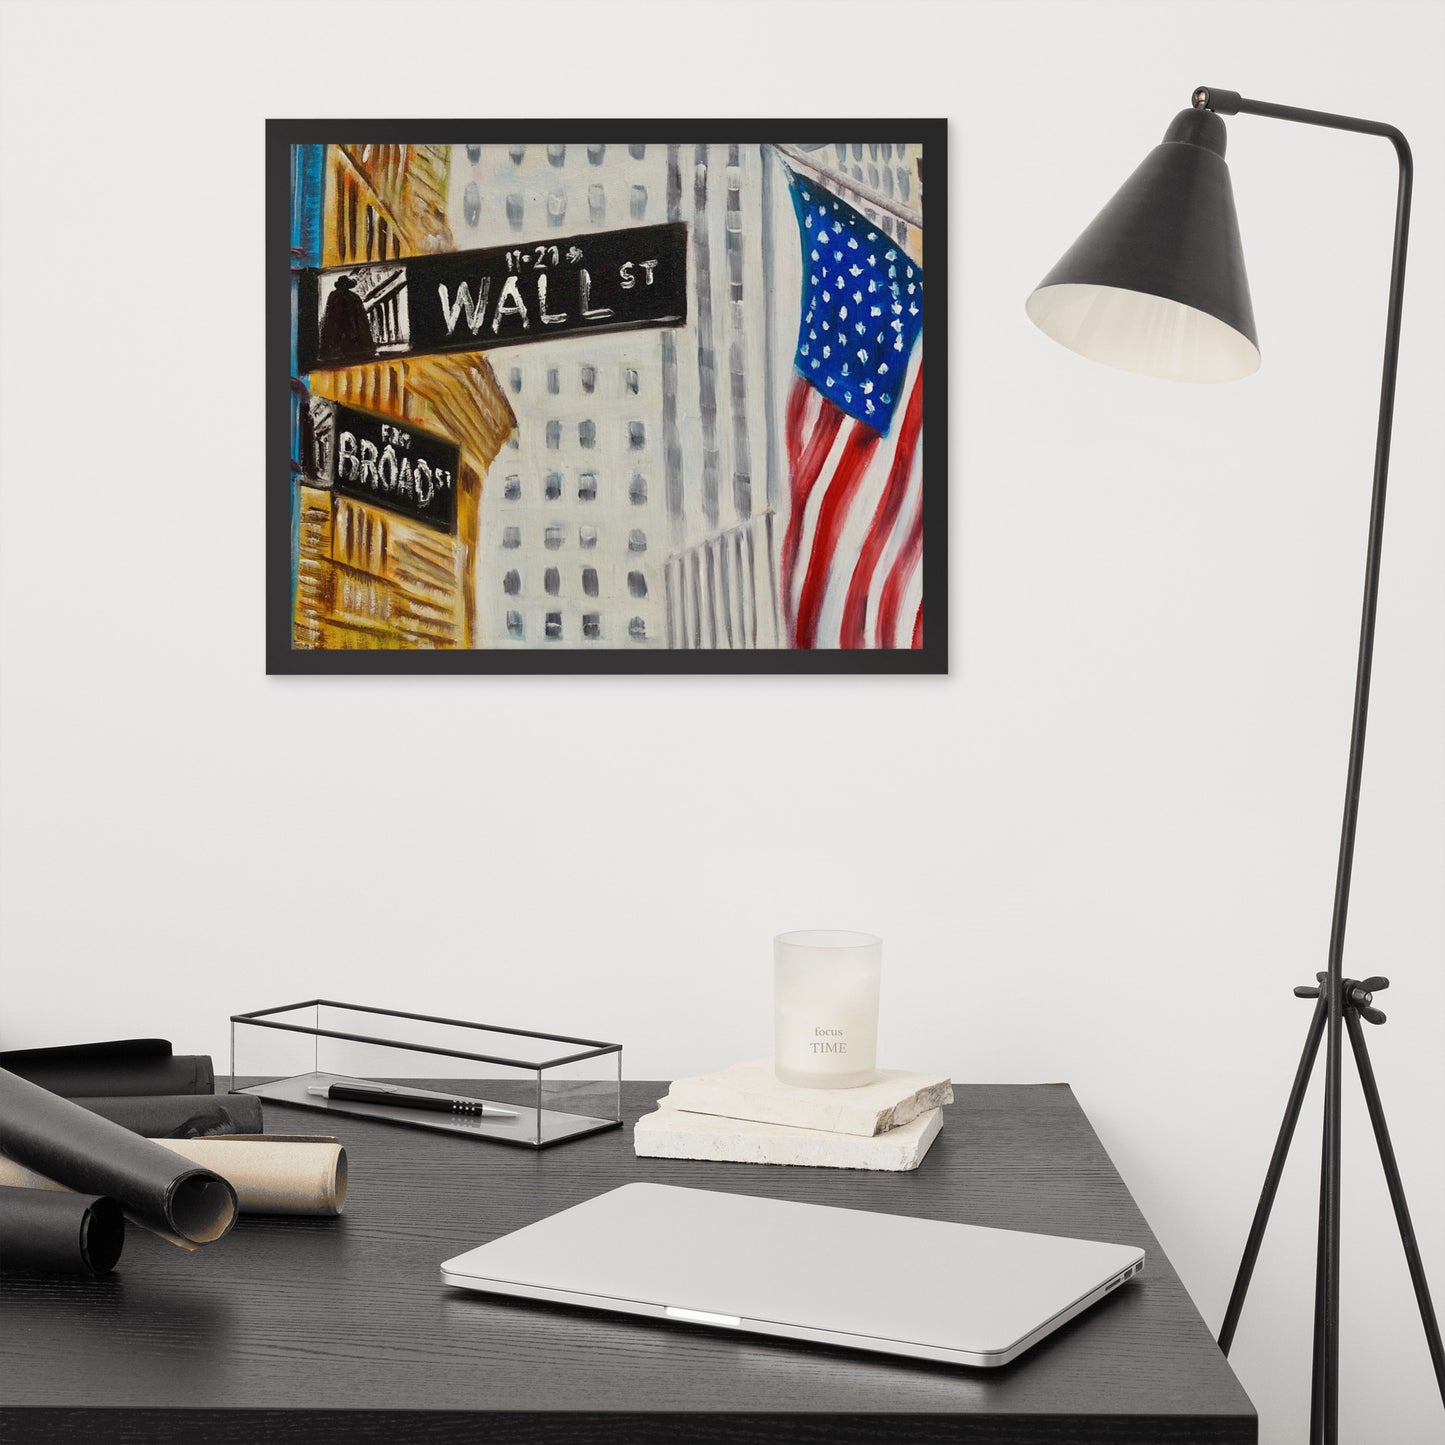 Wall Street New York Framed Poster